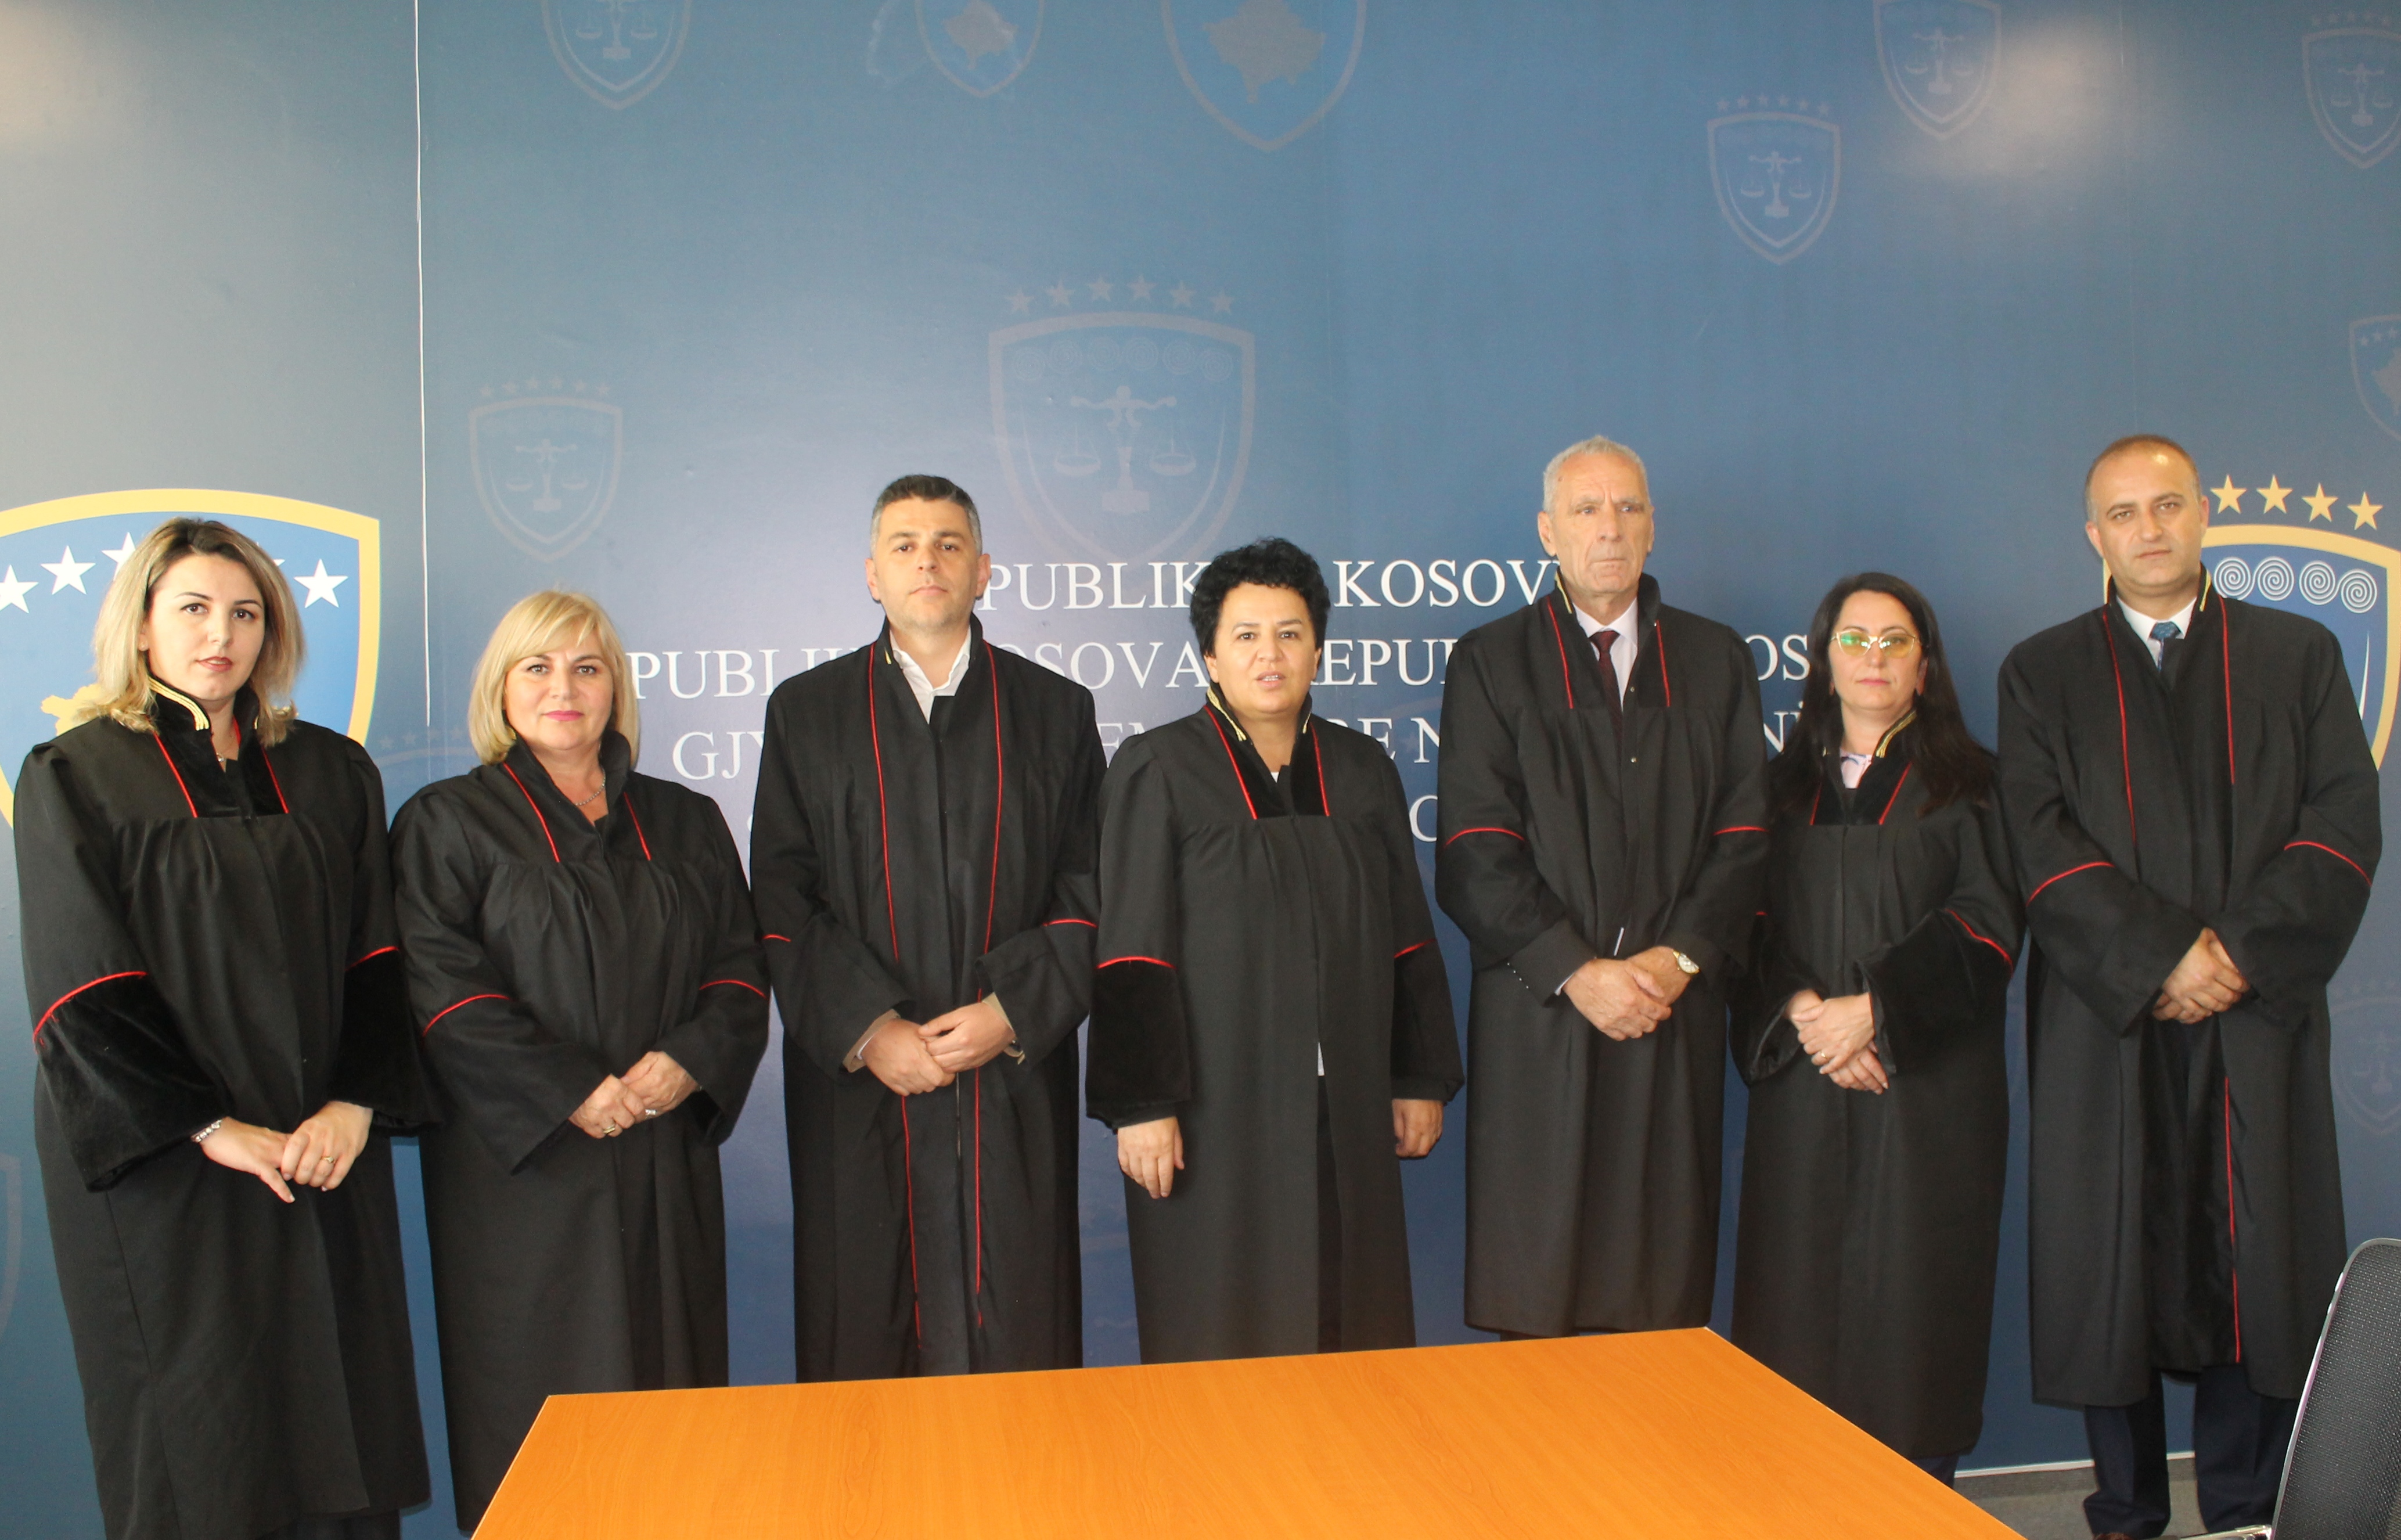 Është funksionalizuar Departamenti Special i Gjykatës Themelore në Prishtinë bazuar në Ligjin Për Gjykatat 06/L – 054